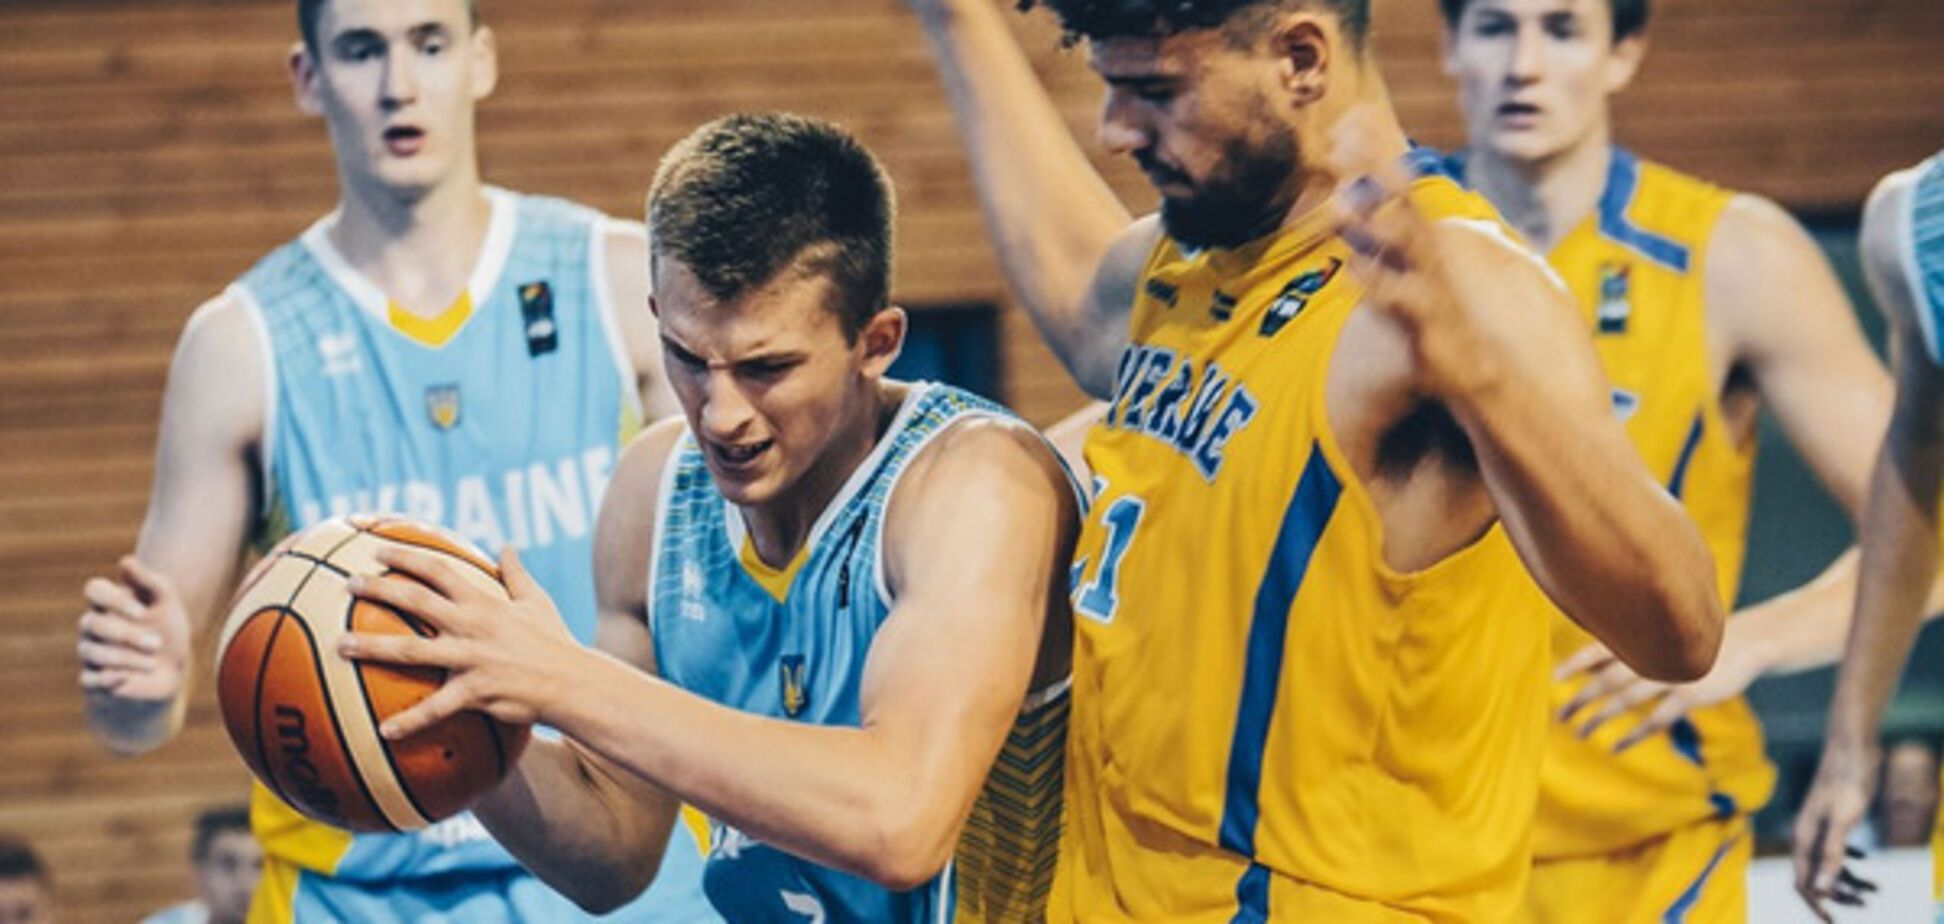 Молодежная сборная Украины по баскетболу